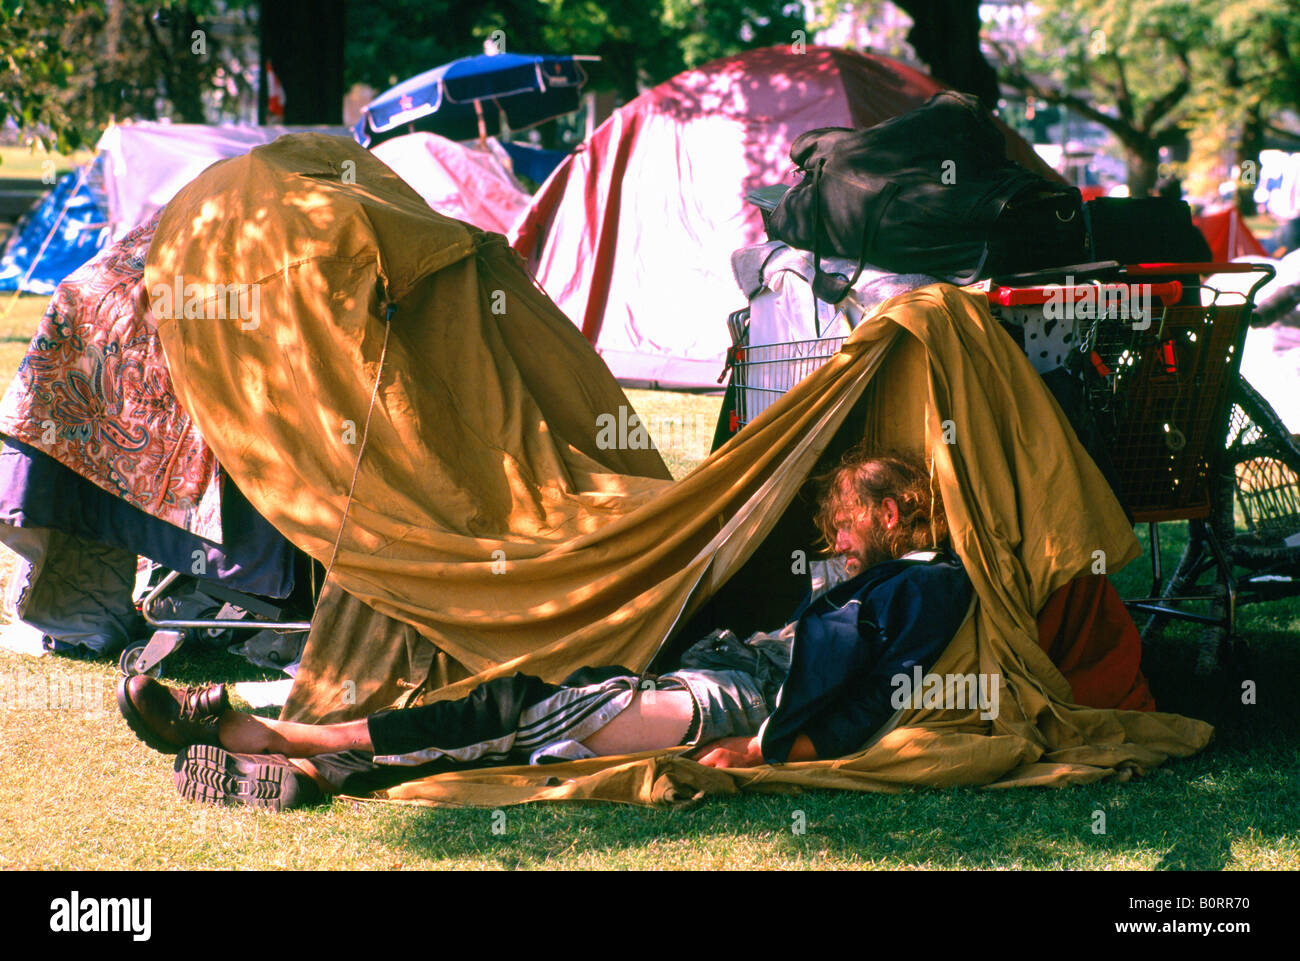 Obdachloser schlafen im provisorischen Zelt Heim und Obdach, Zeltstadt in Urban Park, Nord-Amerika, Sommer Stockfoto